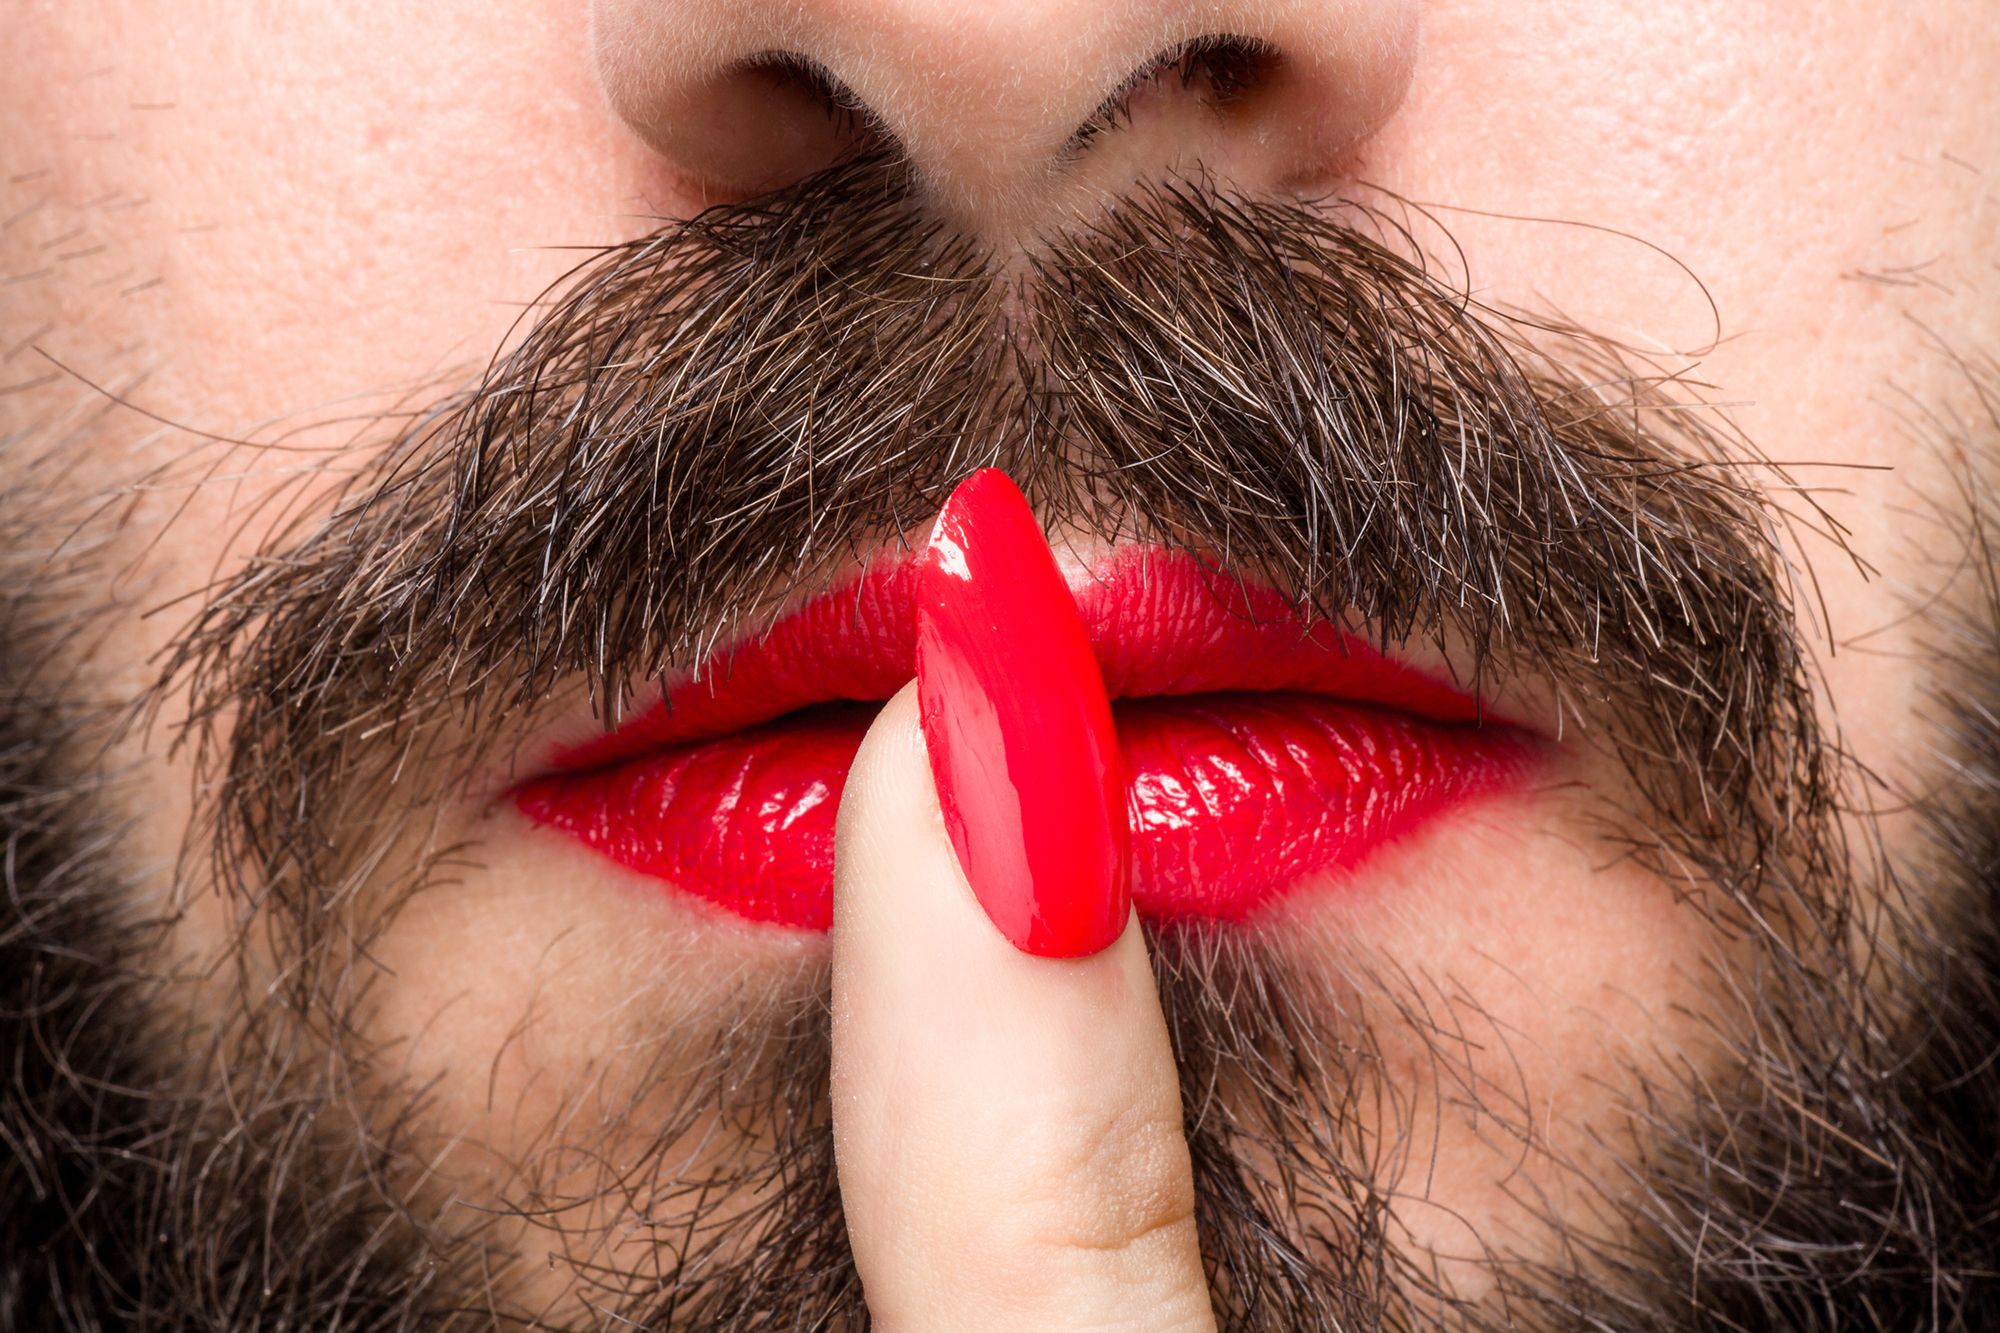 Mann mit Lippenstift und lackierten Fingernägeln macht ein Pssst-Zeichen